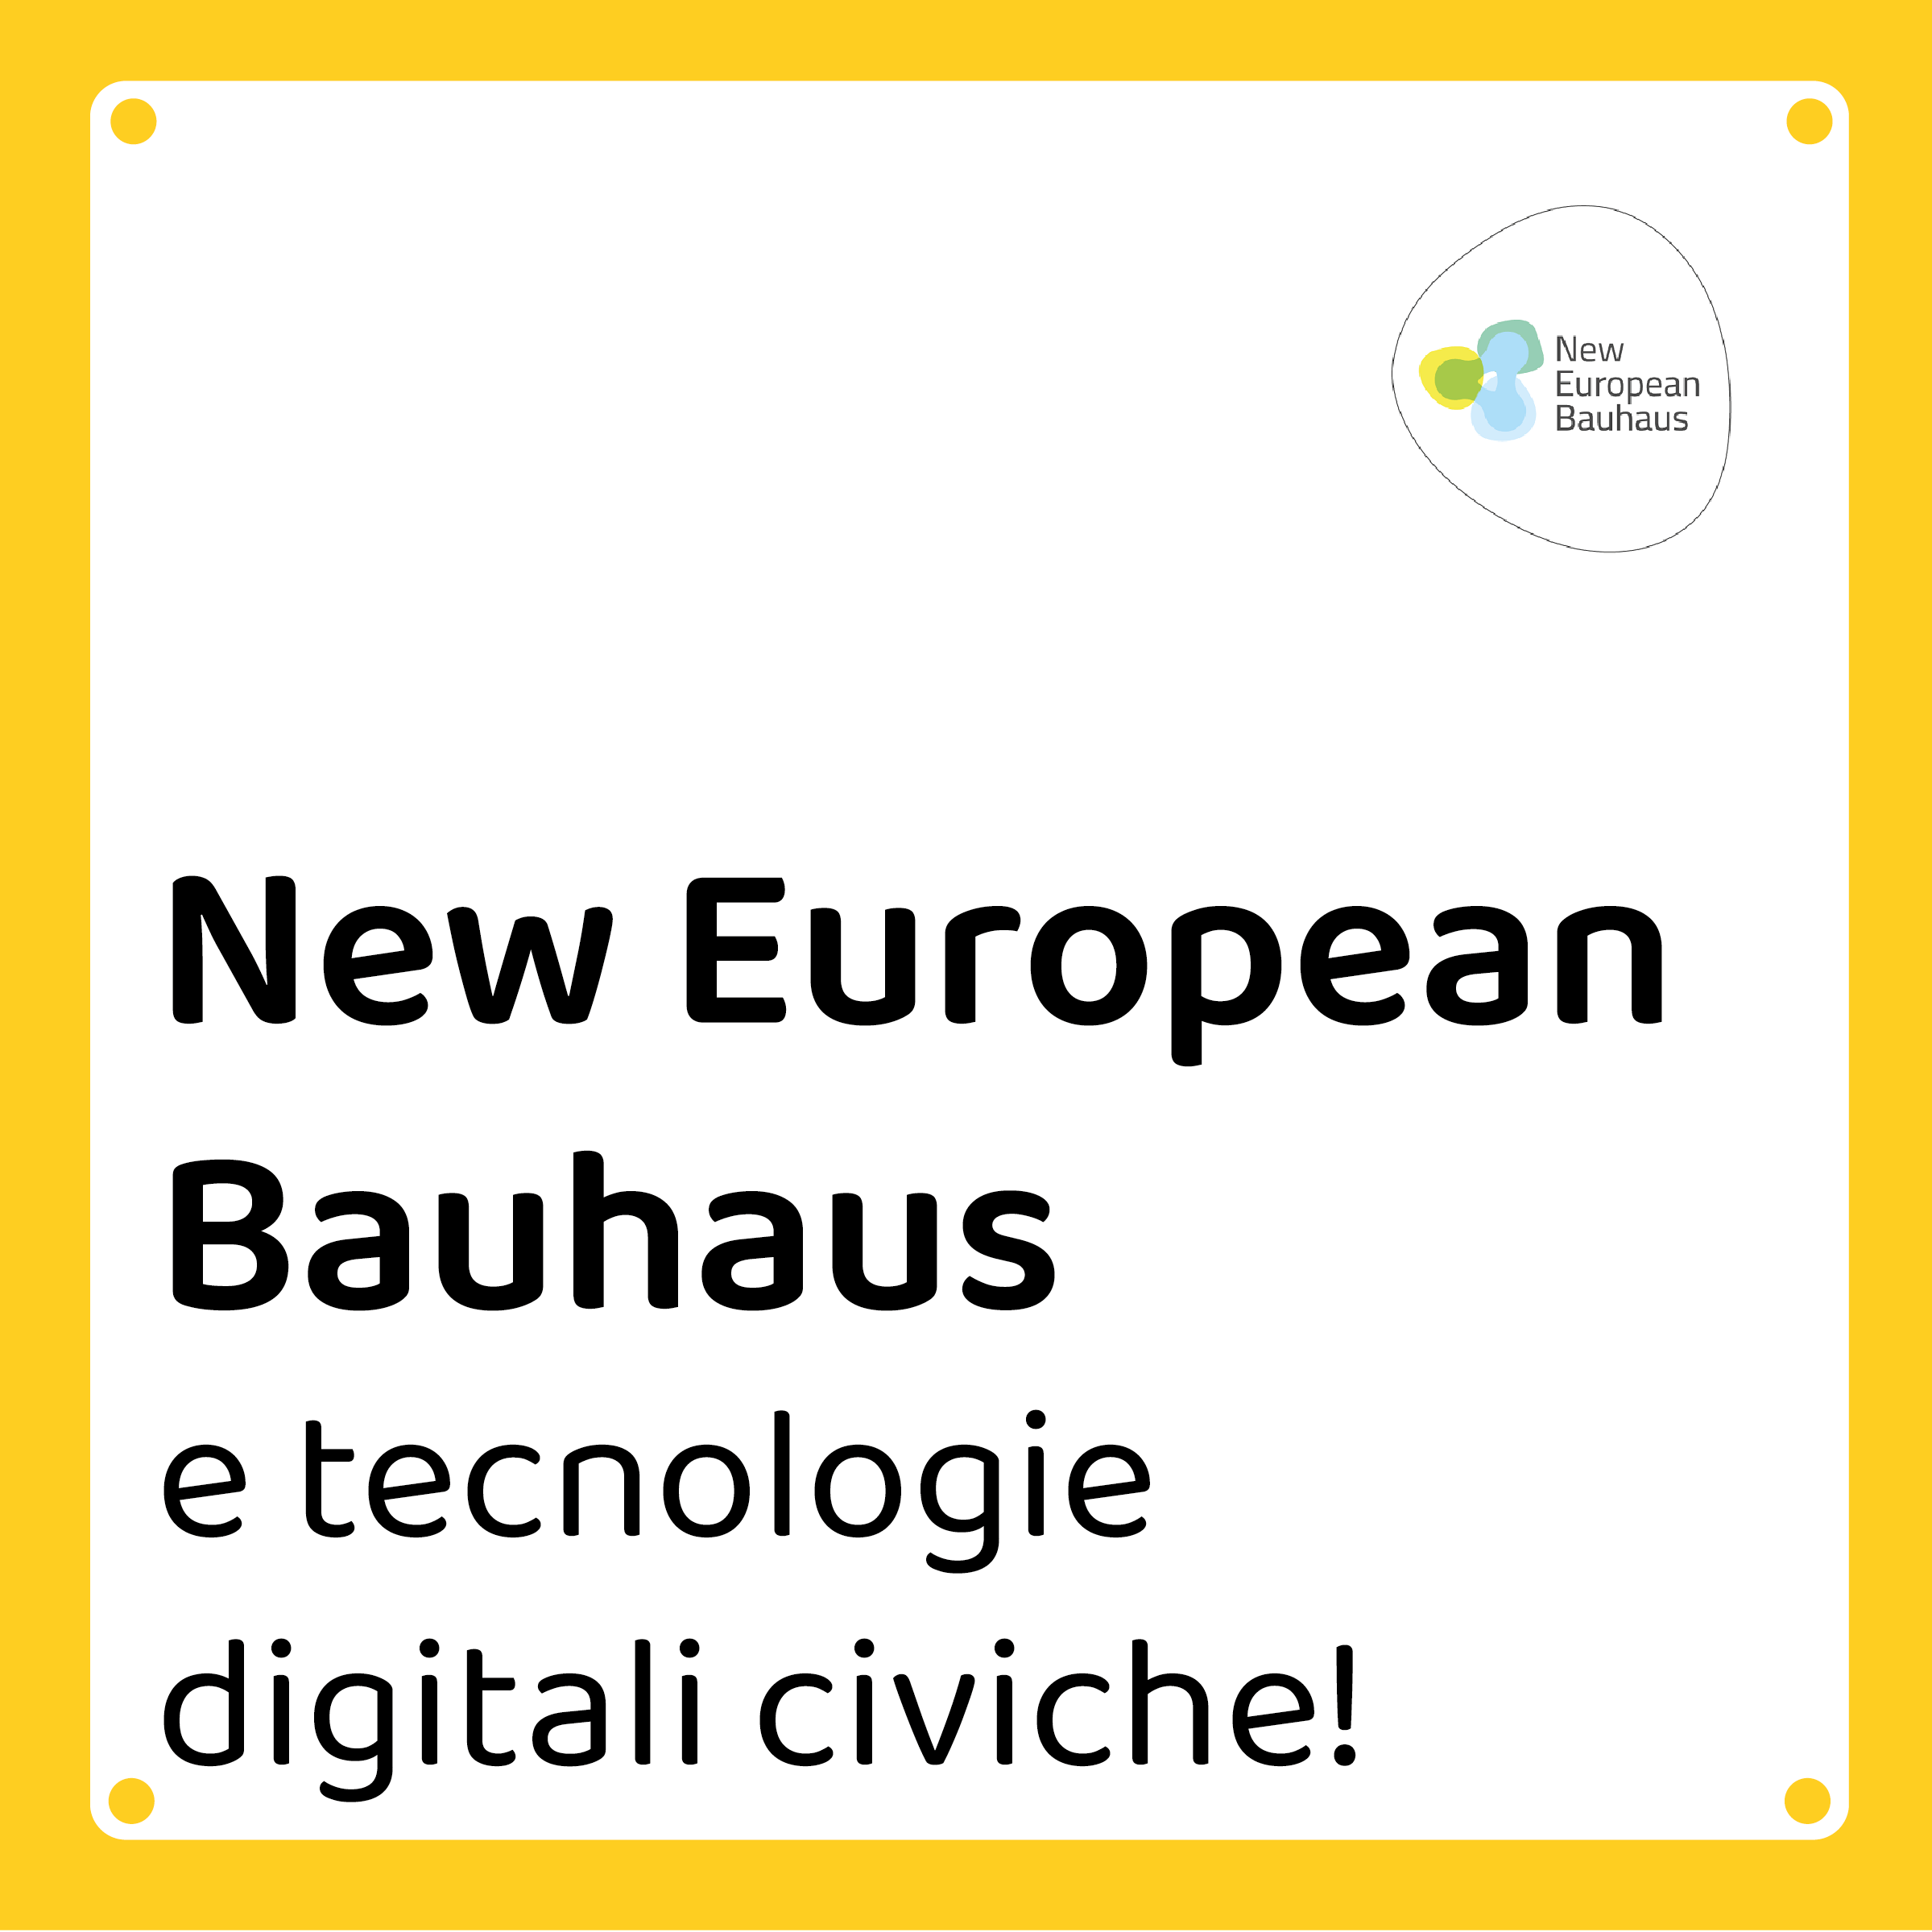 New European Bauhaus Festival - Cities of Design Network